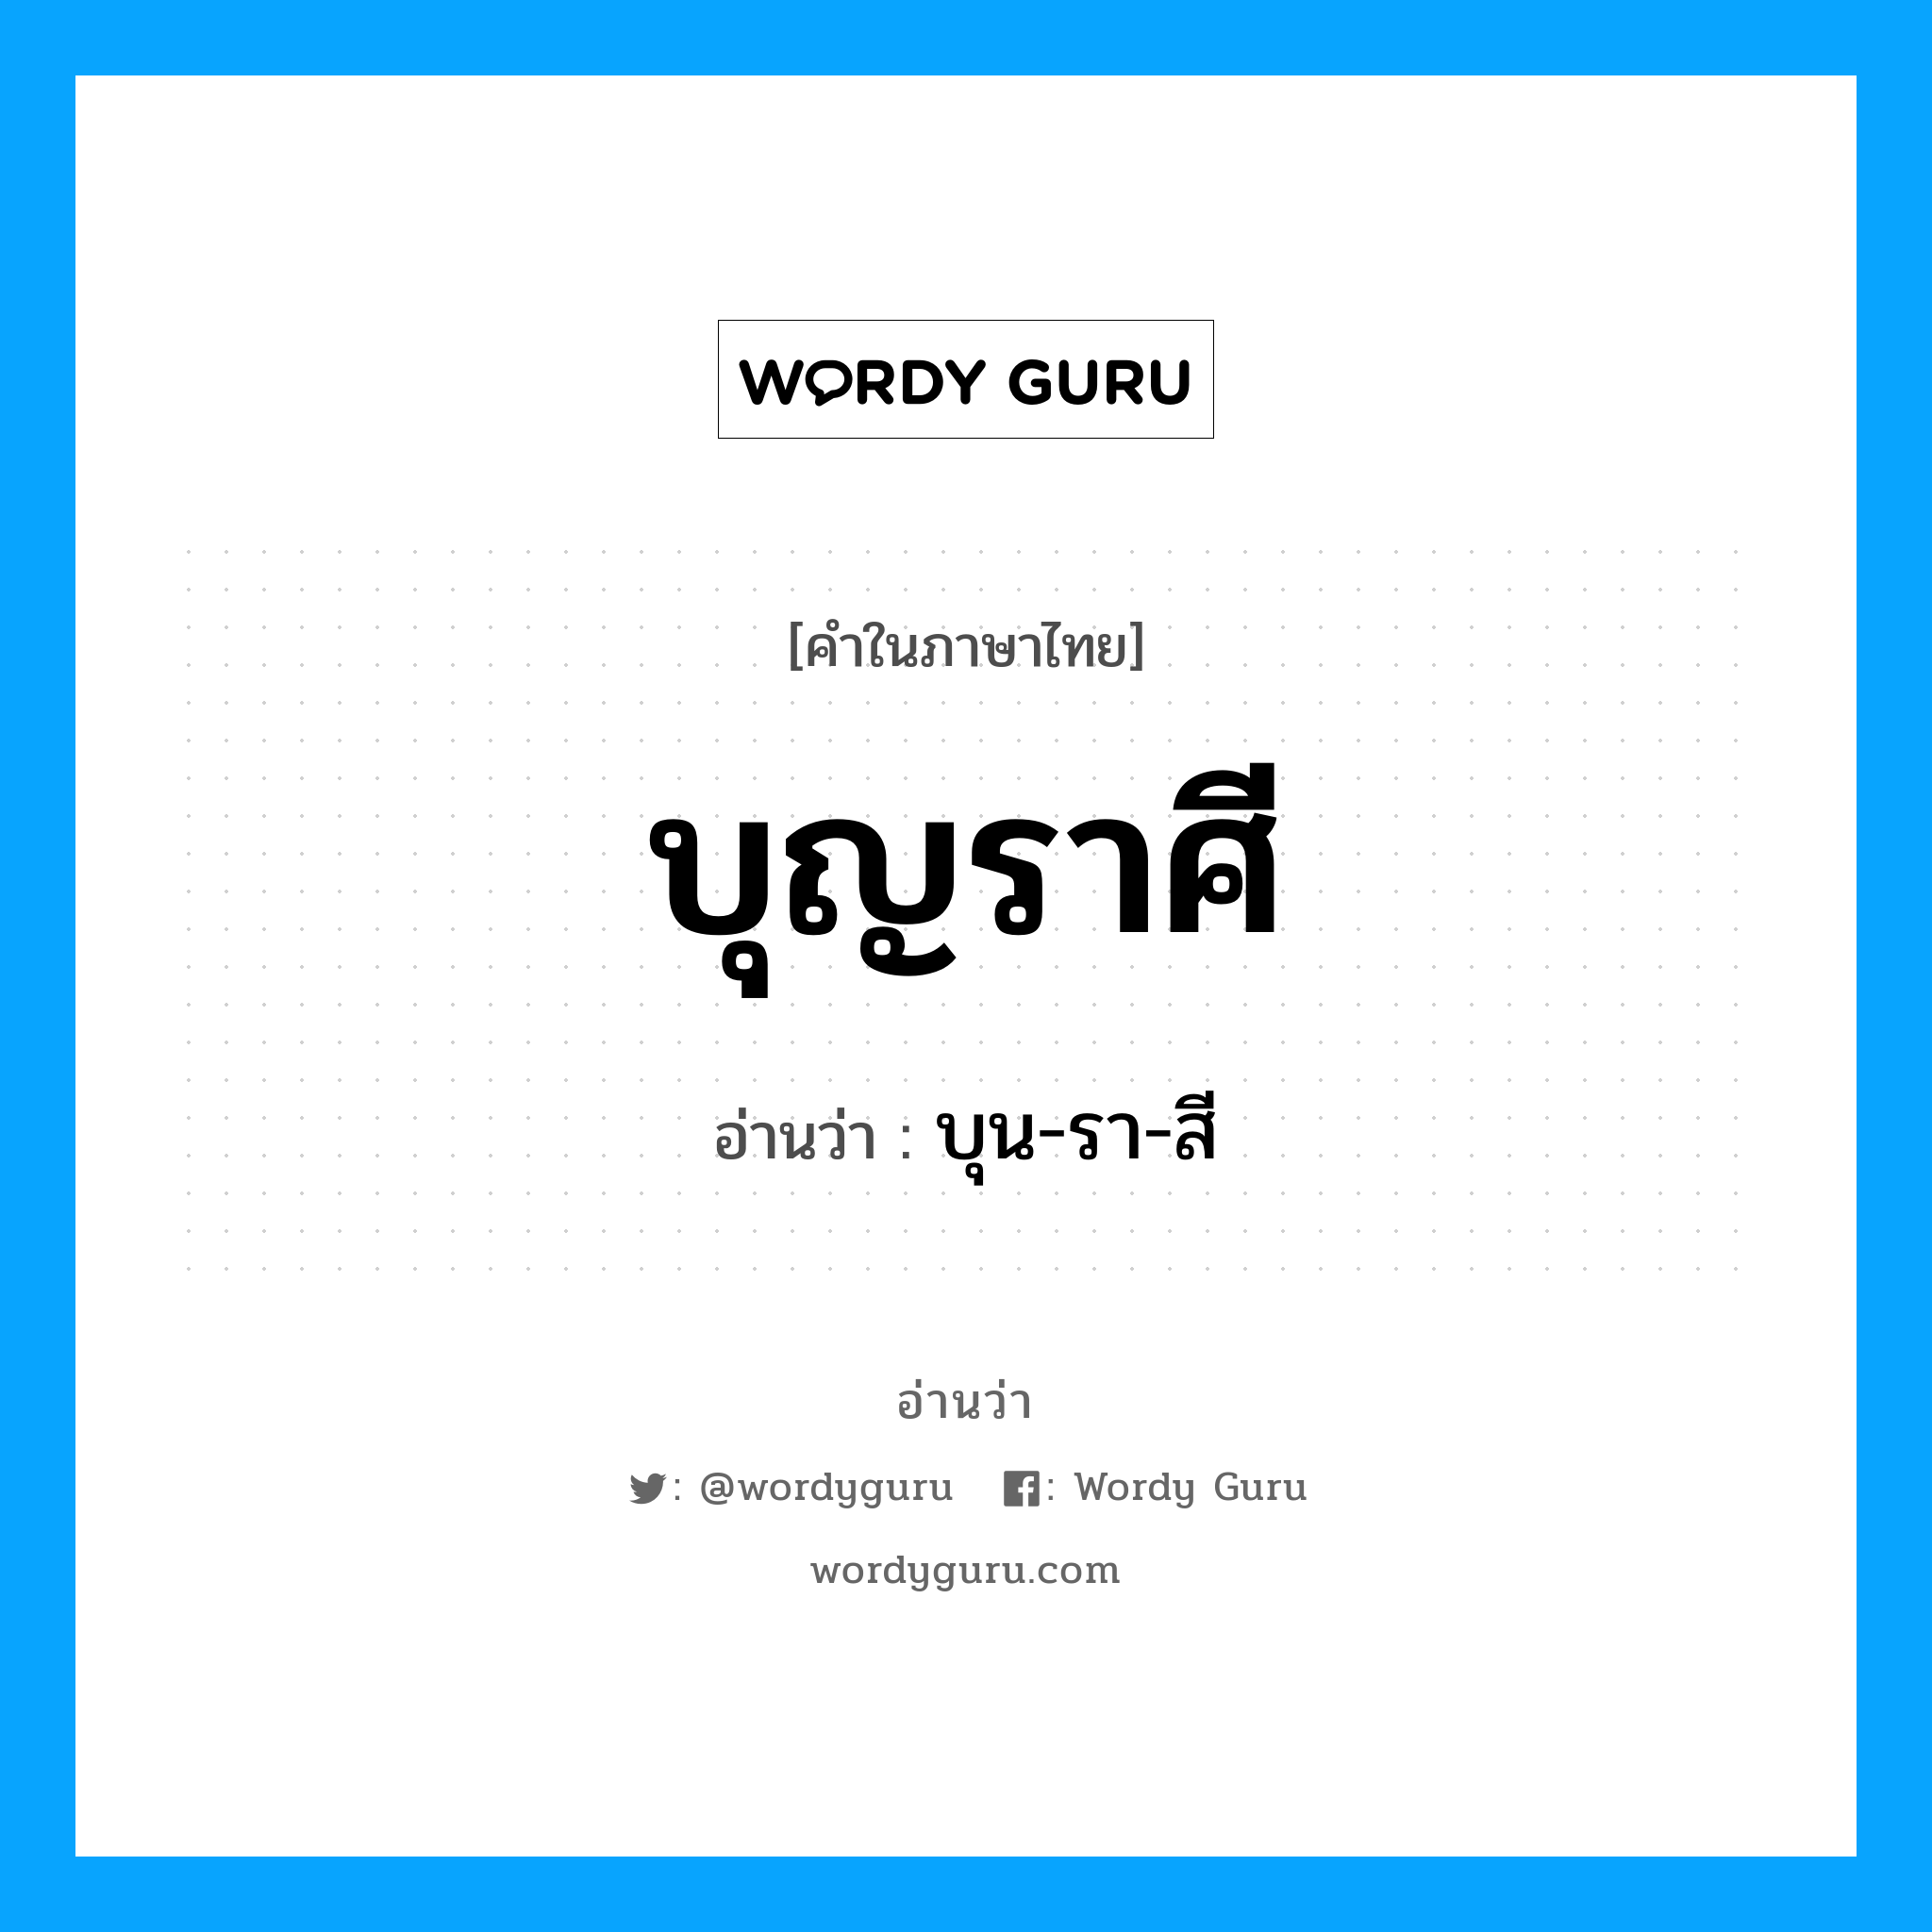 บุน-รา-สี เป็นคำอ่านของคำไหน?, คำในภาษาไทย บุน-รา-สี อ่านว่า บุญราศี